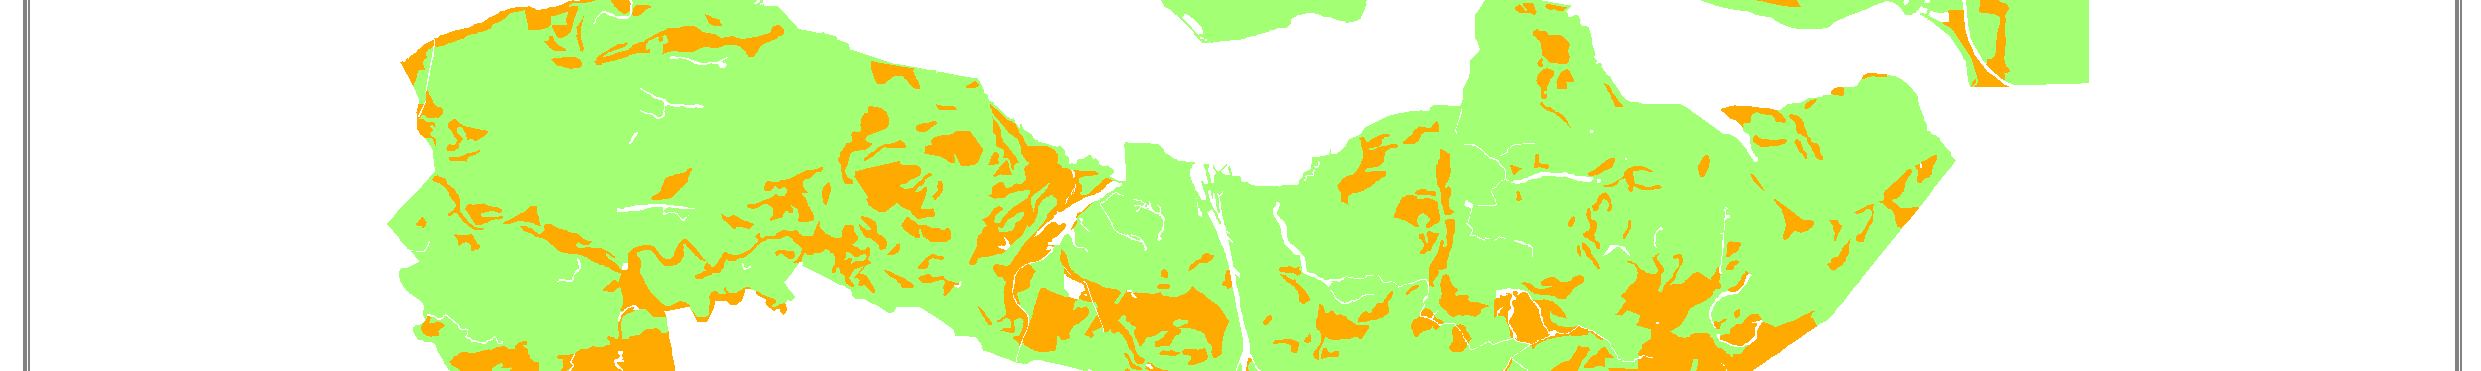 provincie Zeeland (links) en droogtegevoelige bodems in de